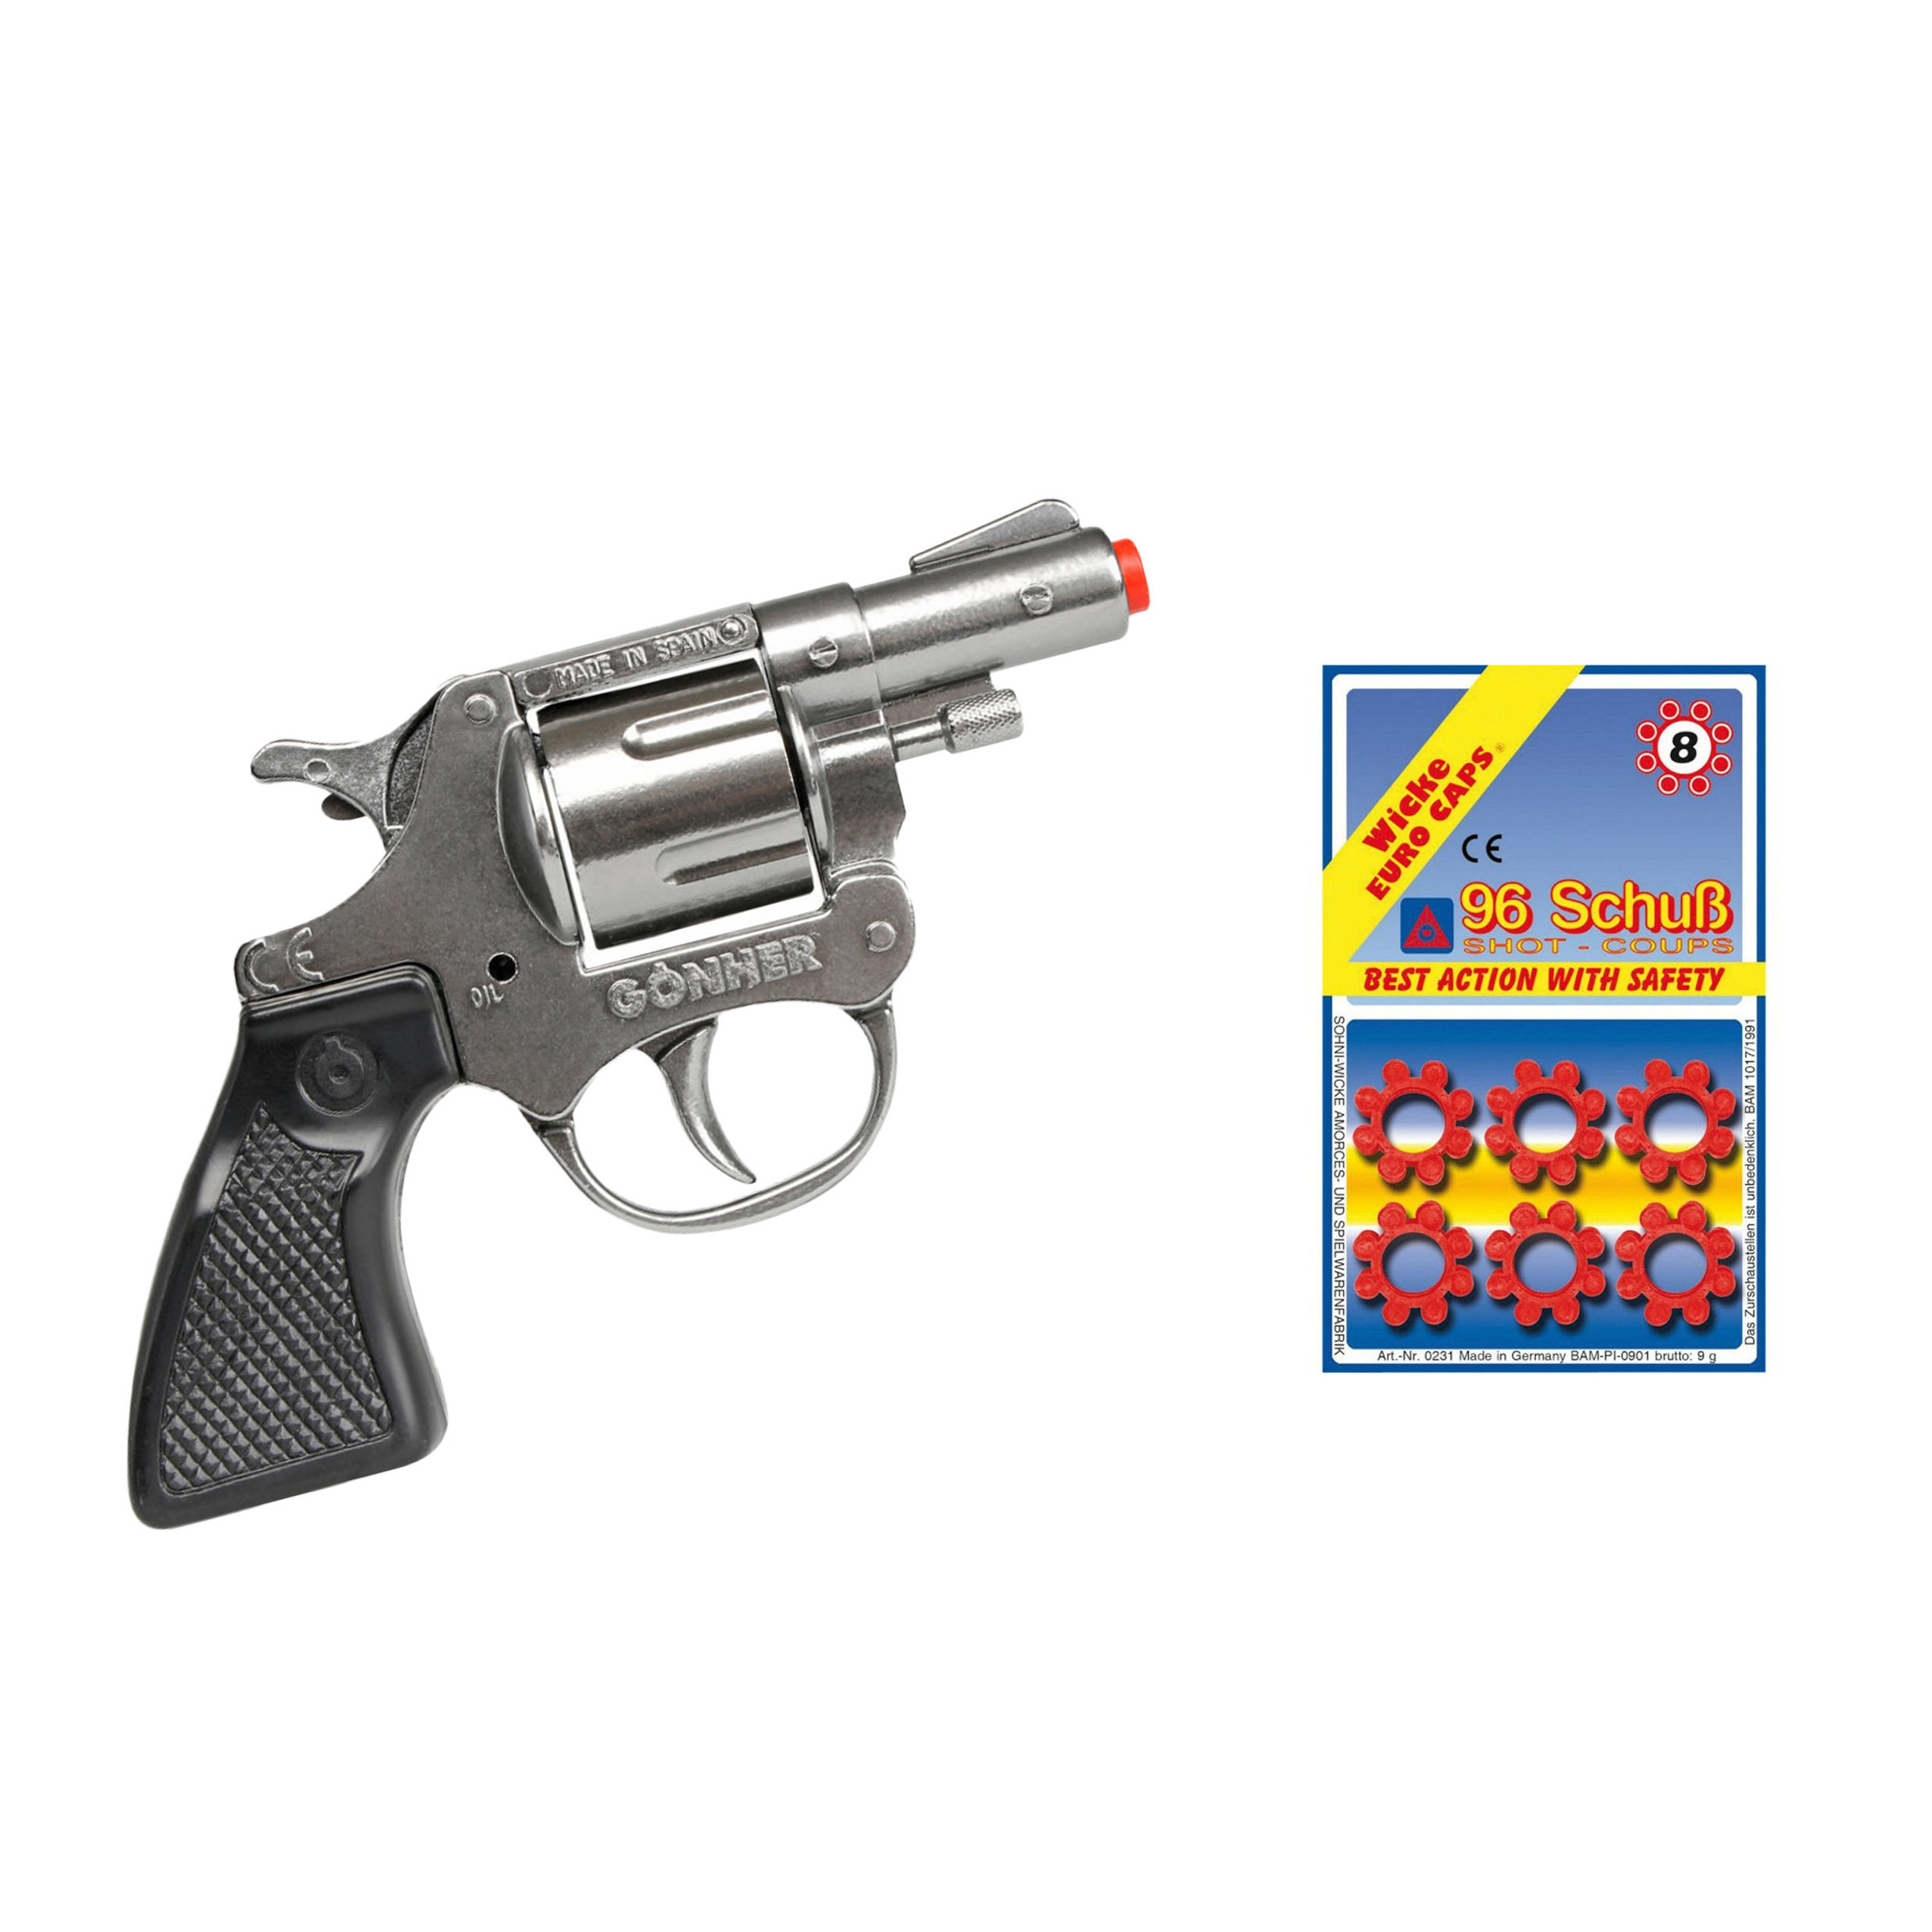 Gohner politie verkleed speelgoed revolver-pistool metaal met 12x ringen 8 schots plaffertjes